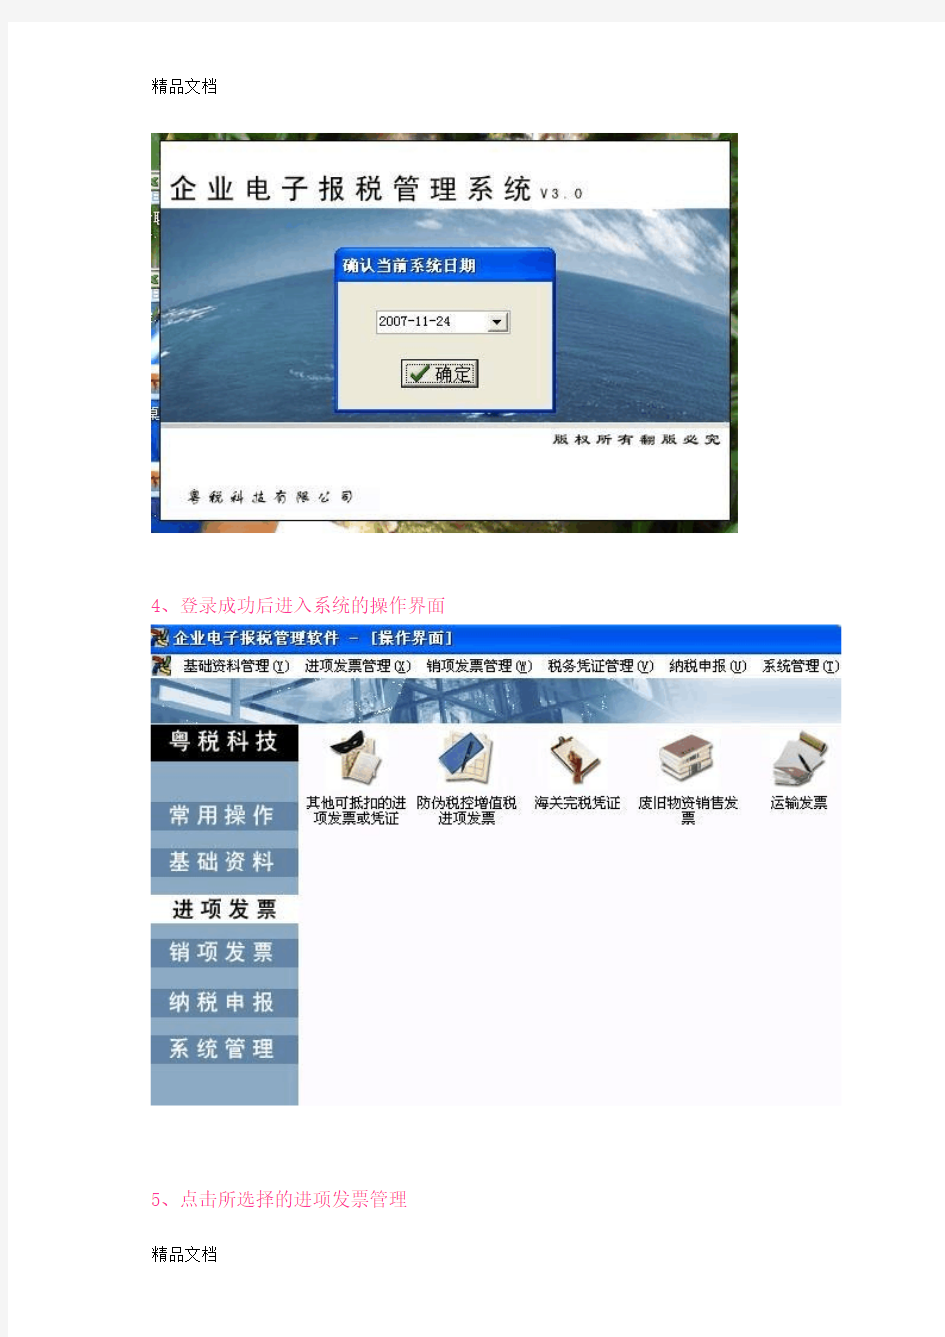 (整理)广东一般纳税人申报系统基本操作